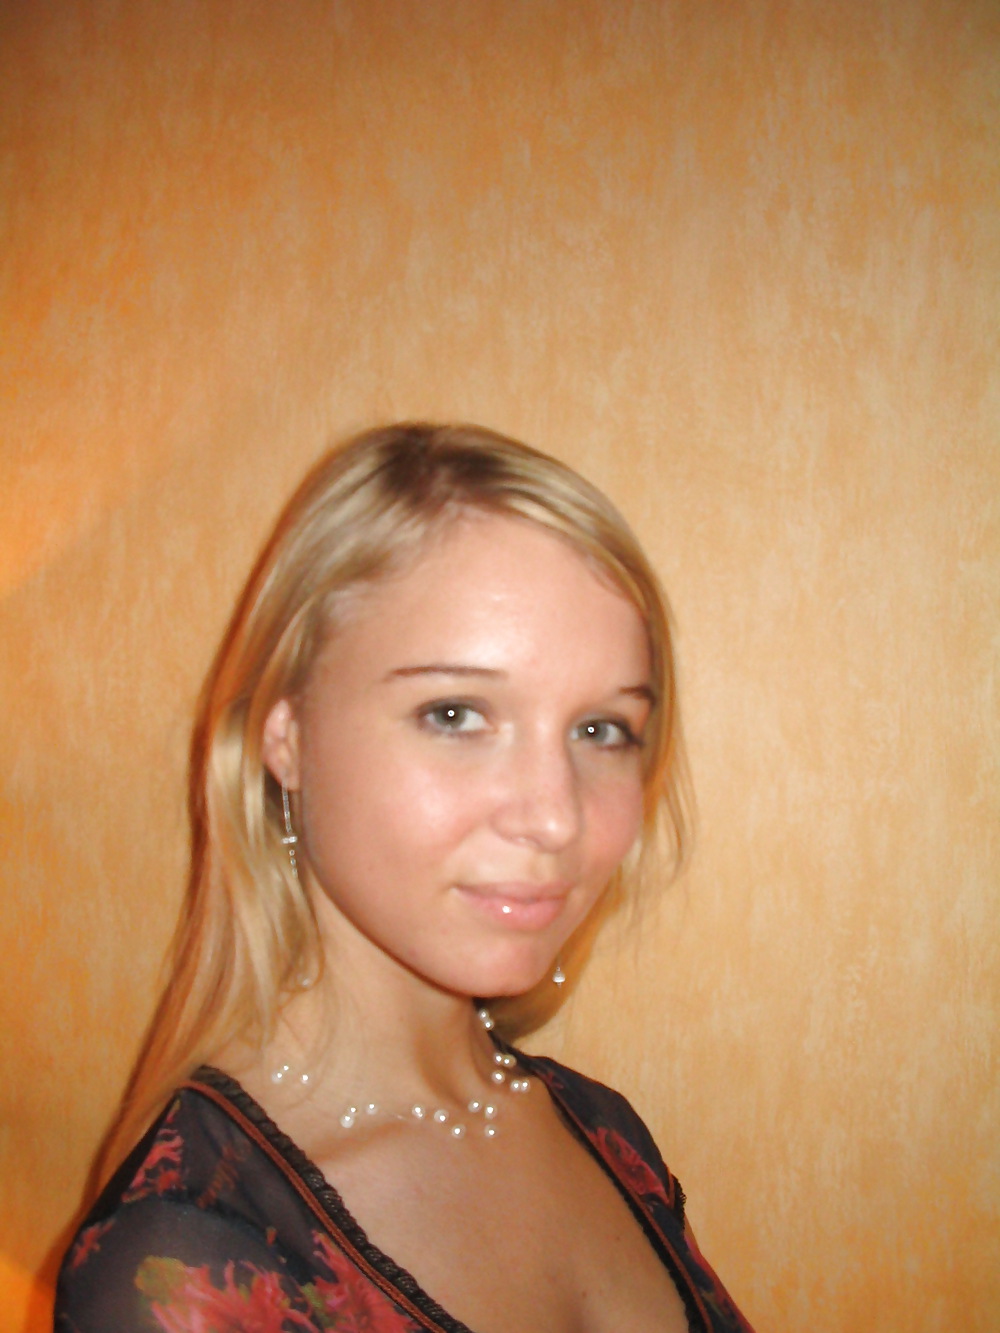 Hot ex russian teen girlfriend #7484985